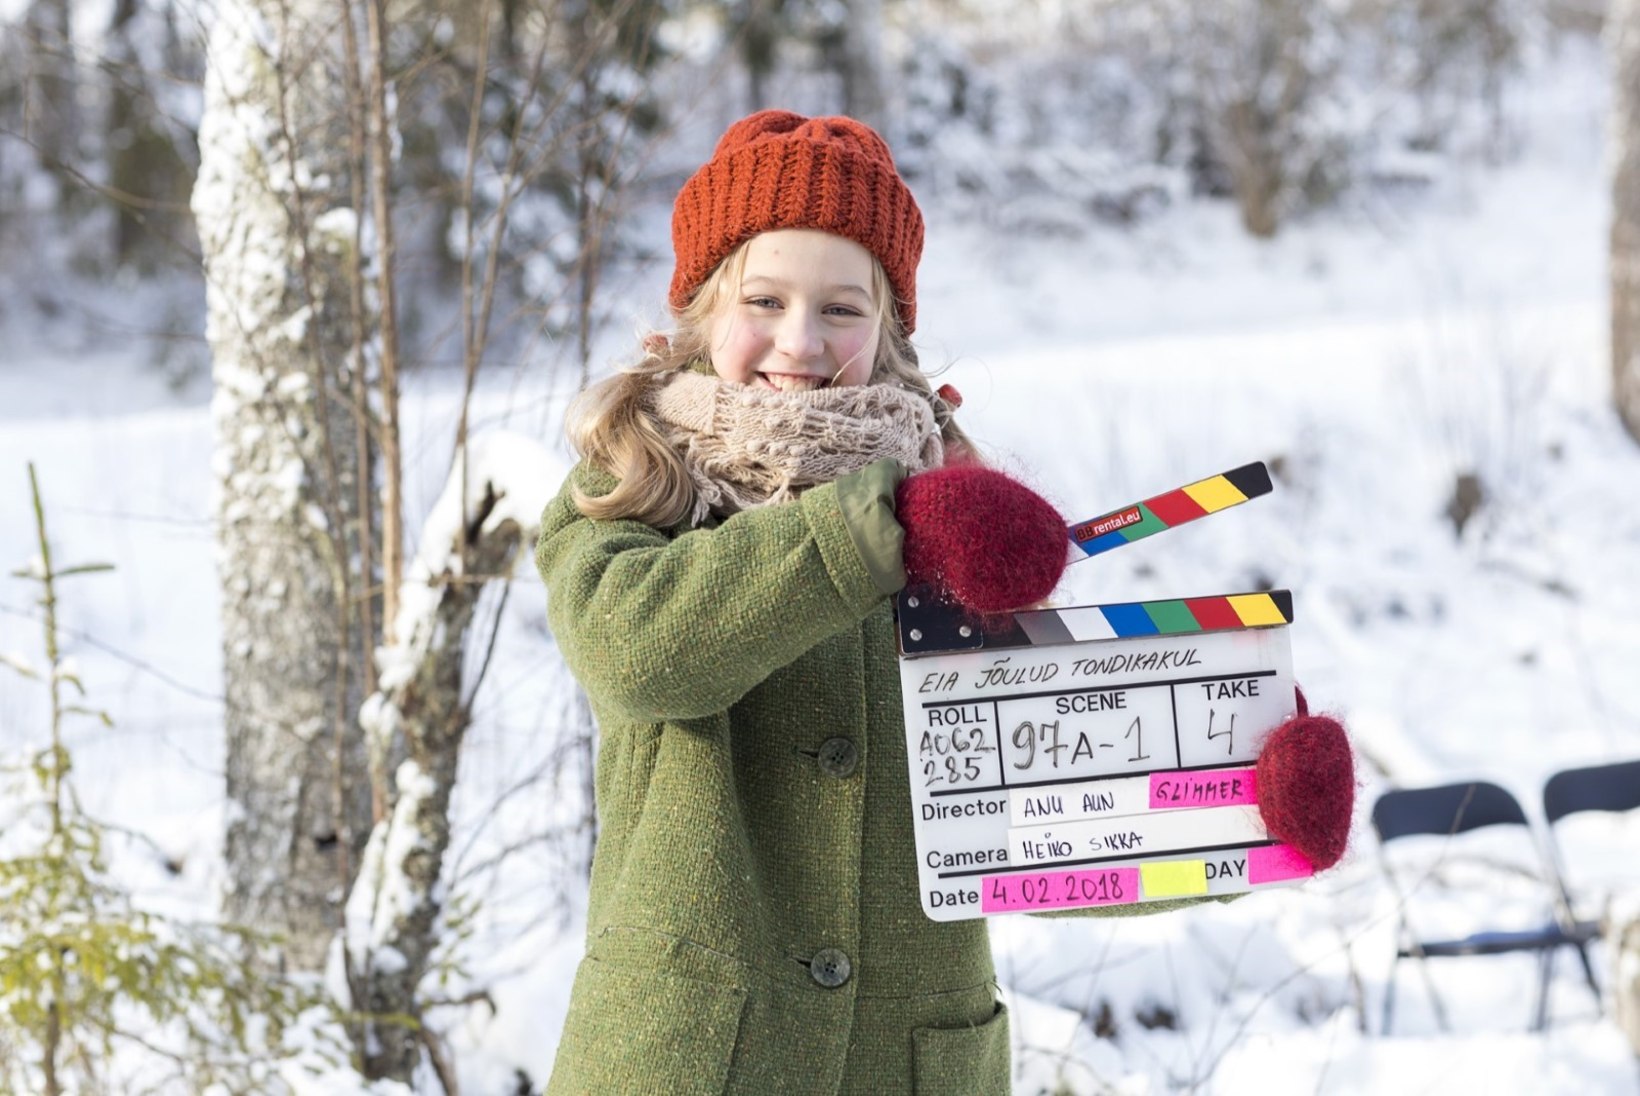 VAATA! Avaldati Eesti esimese laste jõulufilmi „Eia jõulud Tondikakul“ treiler